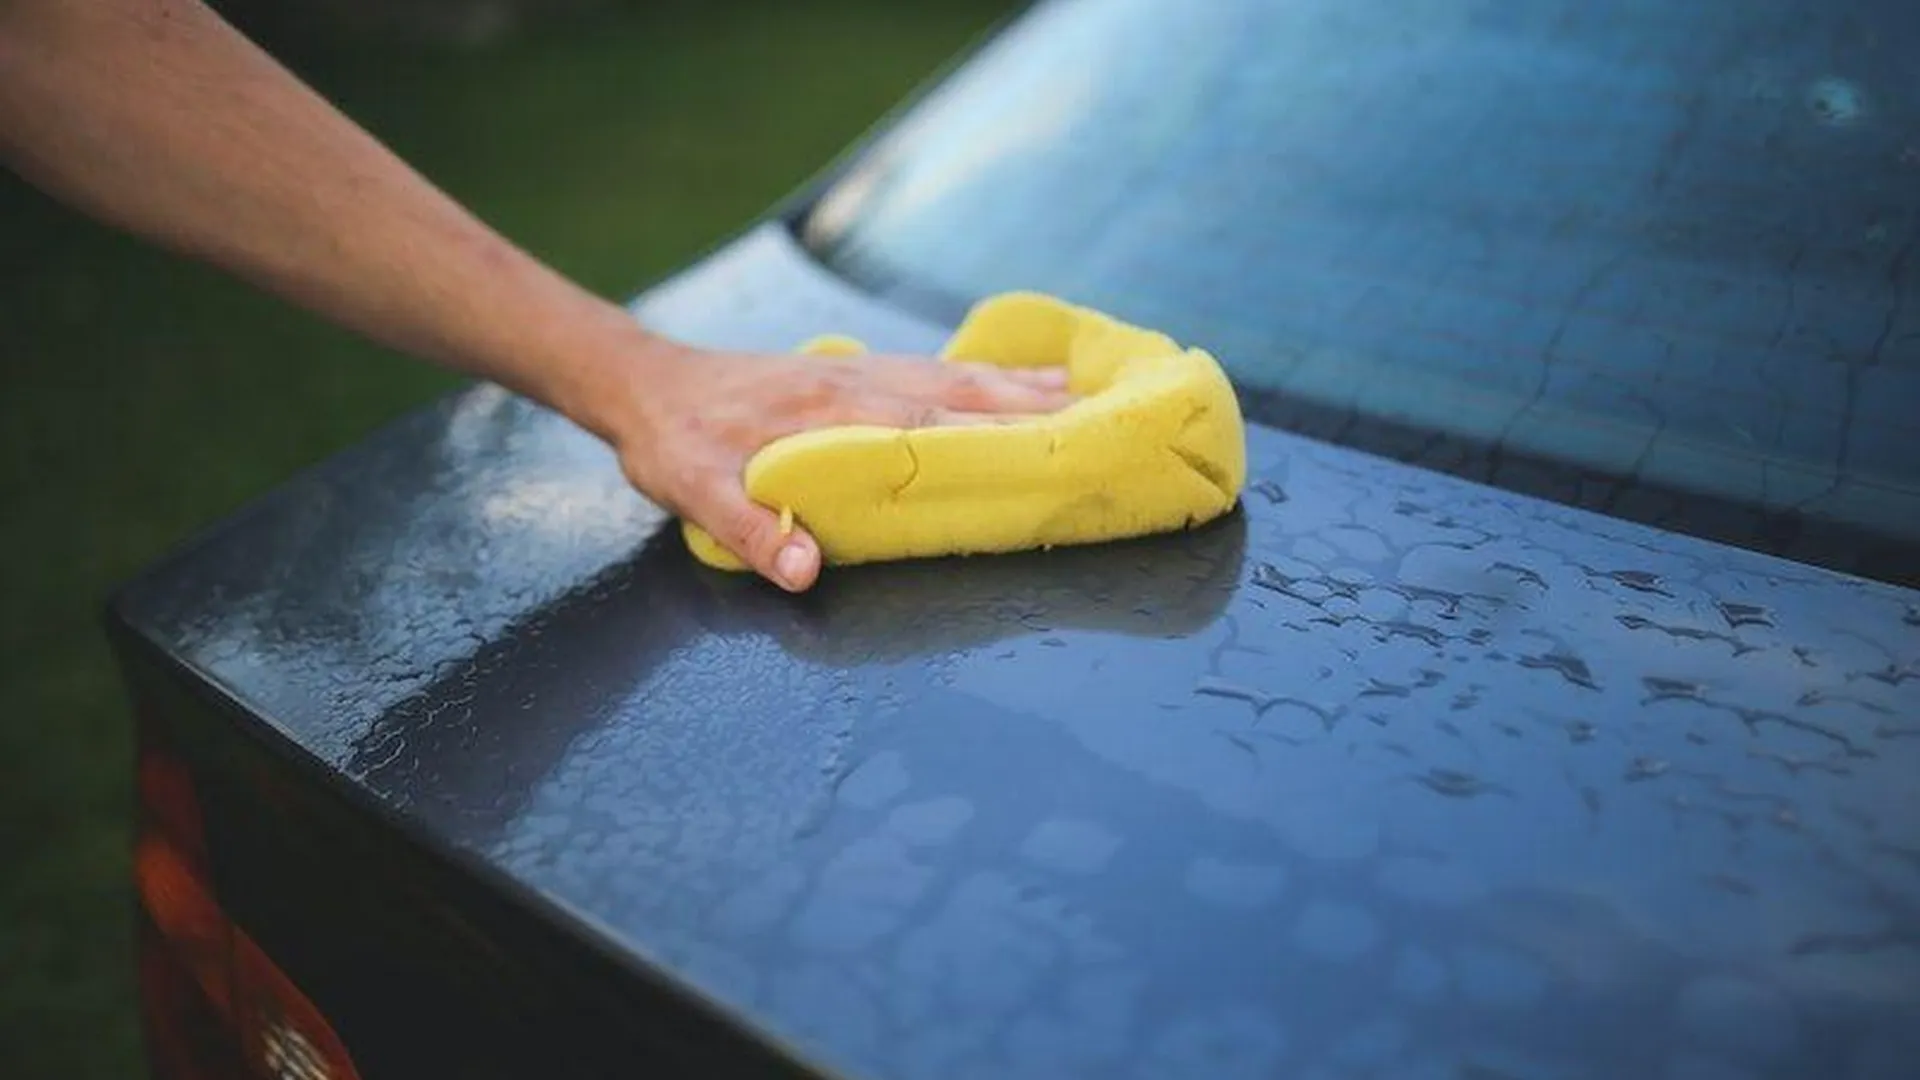 «Не планирую менять распорядок»: дачники раскритиковали закон, запрещающий мыть машину на участке